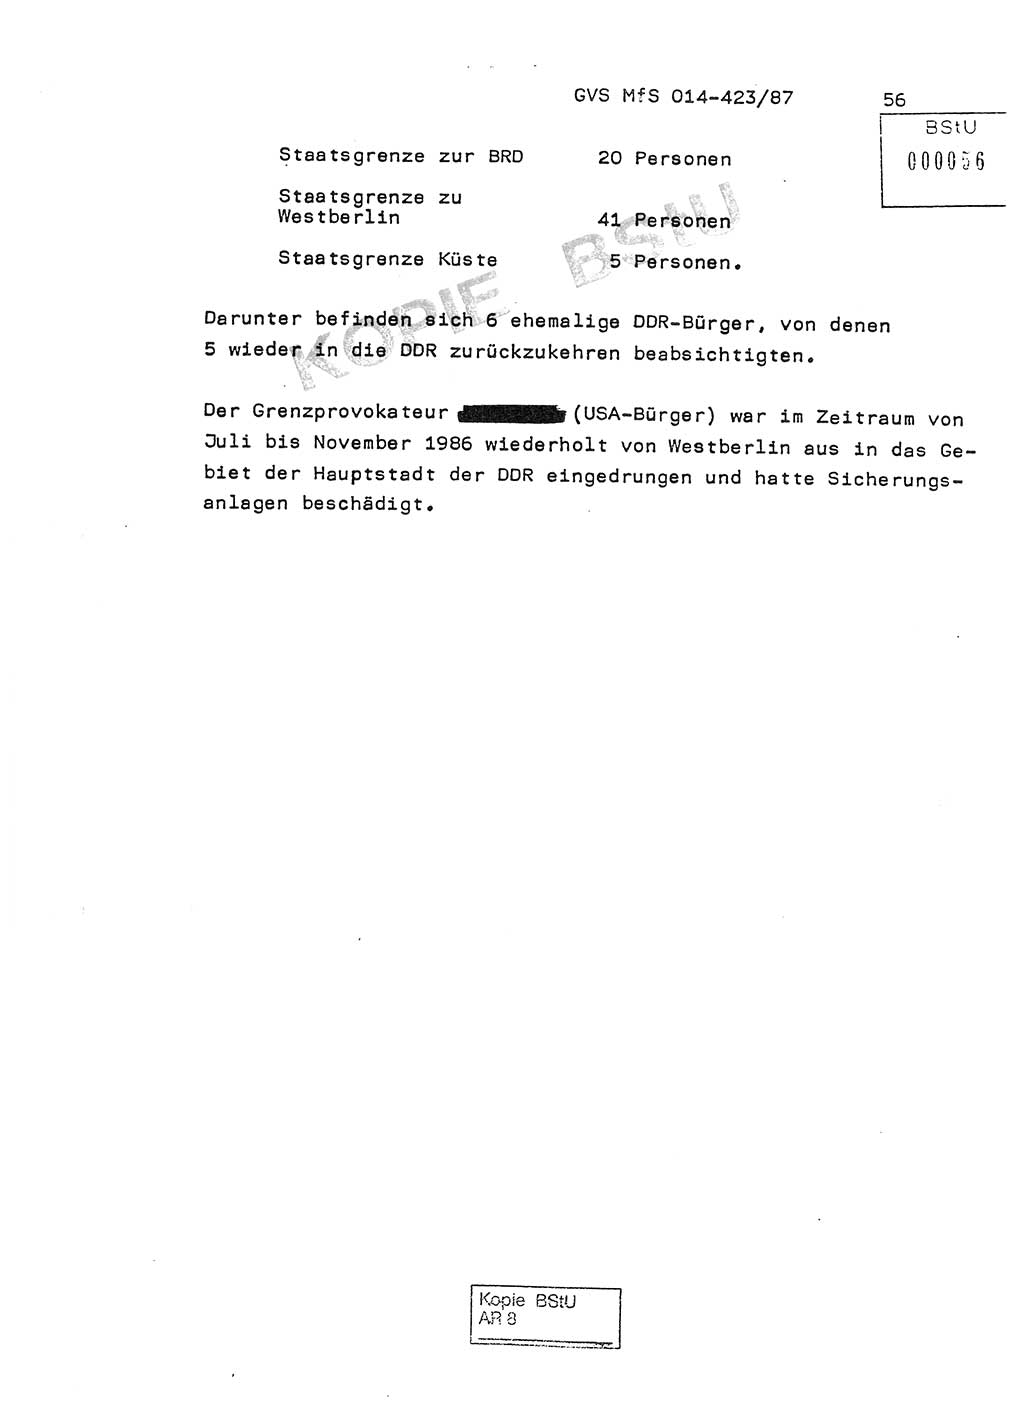 Jahresbericht der Hauptabteilung (HA) Ⅸ 1986, Einschätzung der Wirksamkeit der Untersuchungsarbeit im Jahre 1986, Ministerium für Staatssicherheit (MfS) der Deutschen Demokratischen Republik (DDR), Hauptabteilung Ⅸ, Geheime Verschlußsache (GVS) o014-423/87, Berlin 1987, Seite 56 (Einsch. MfS DDR HA Ⅸ GVS o014-423/87 1986, S. 56)